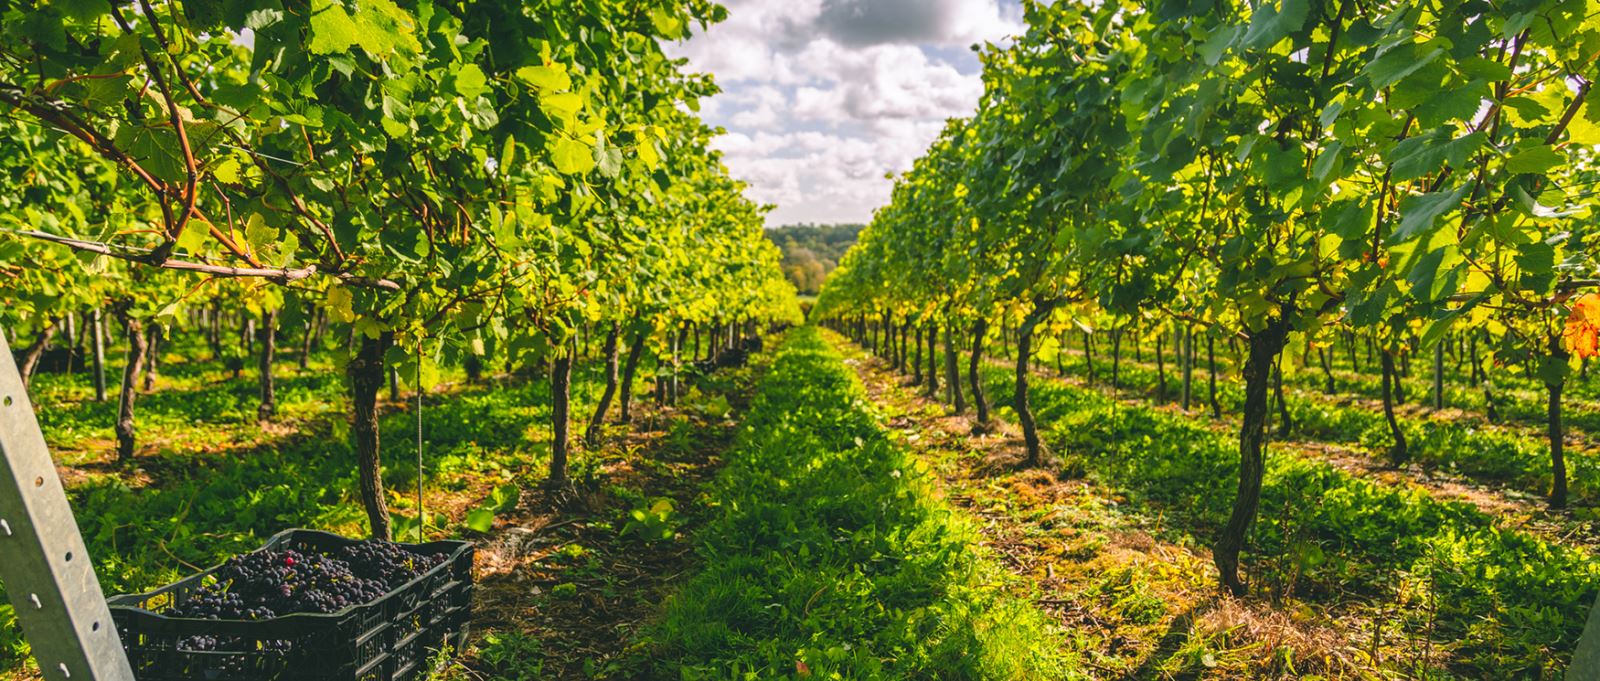 Hampshire vineyards